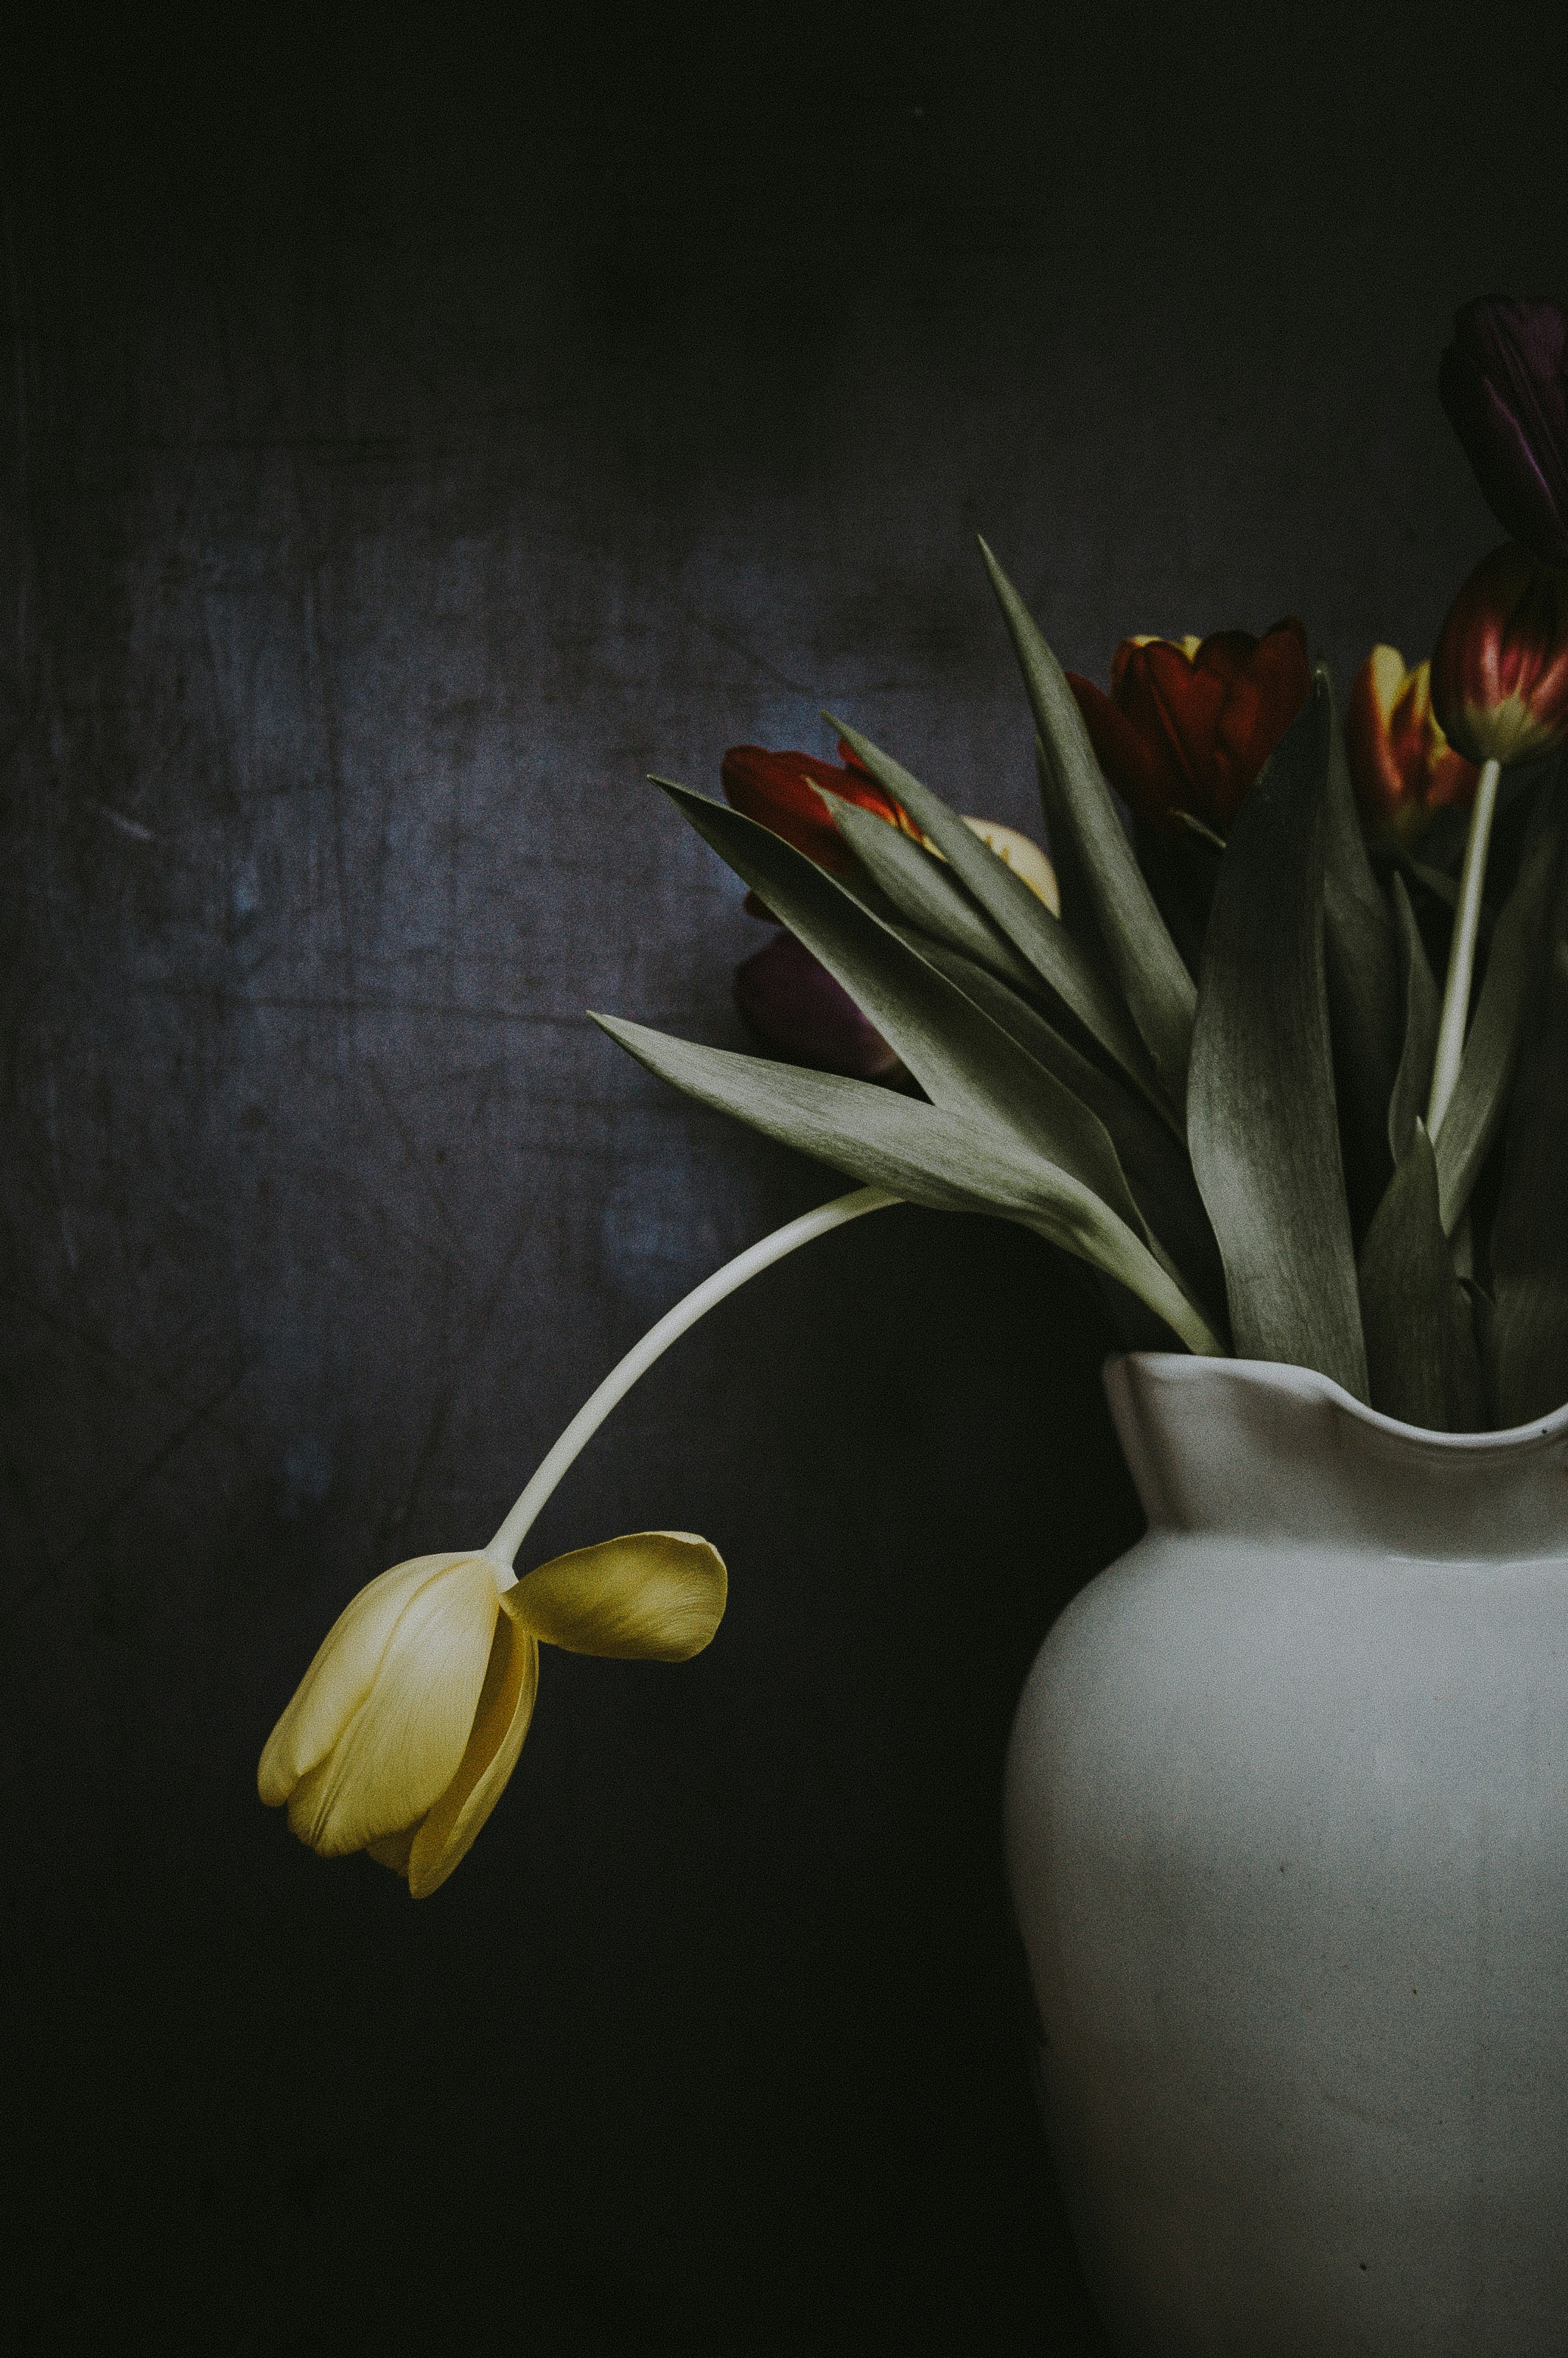 Tulips on dark background